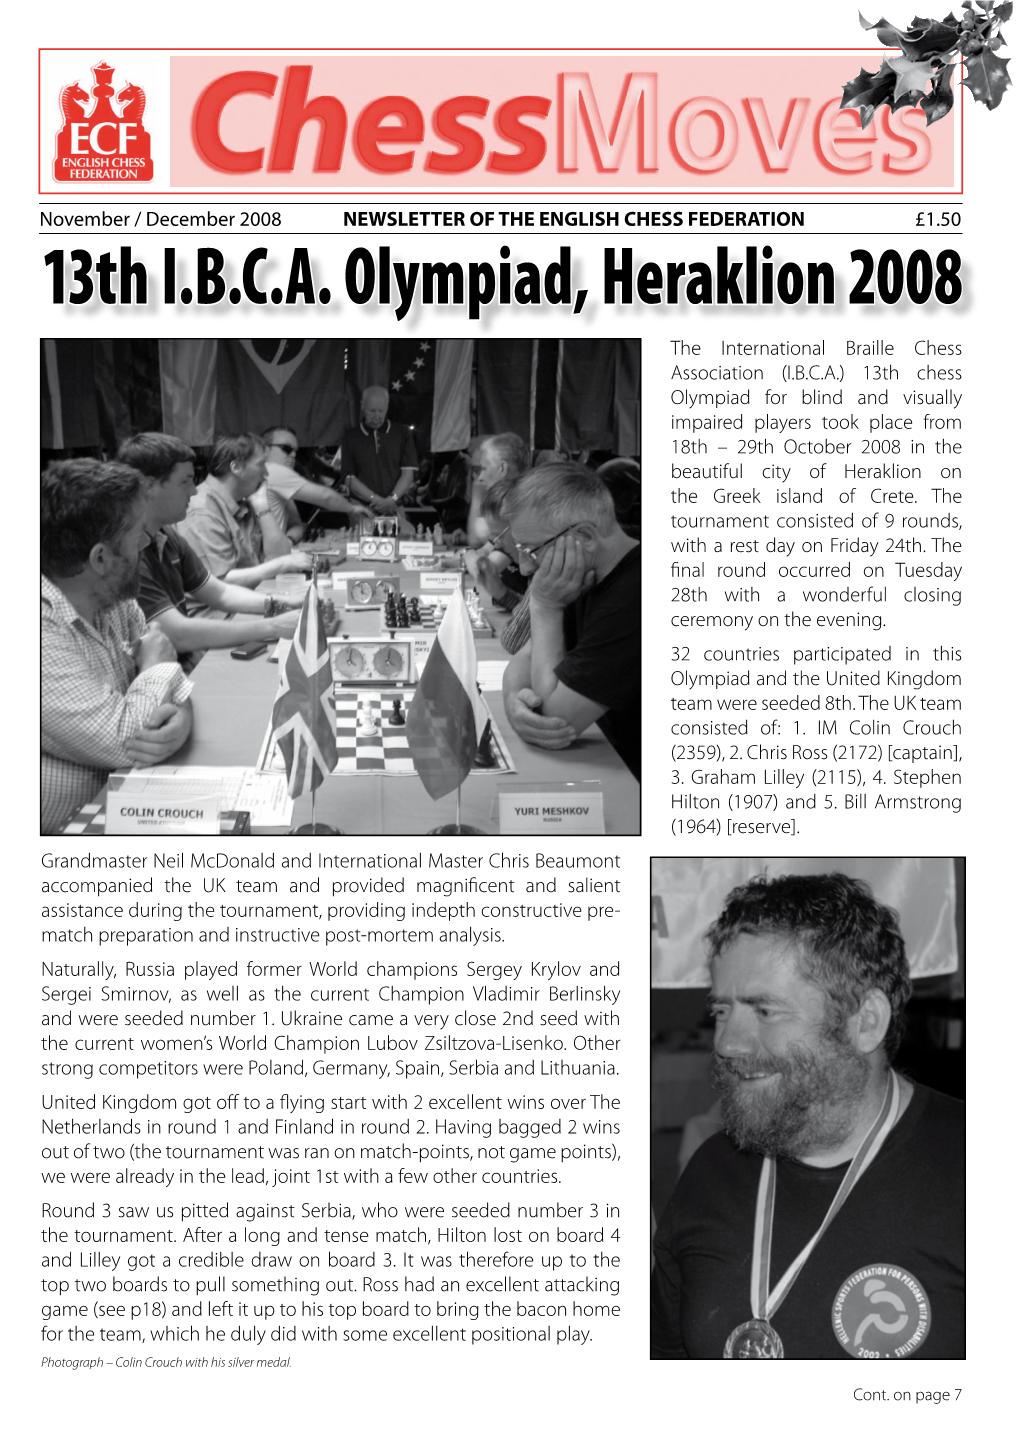 13Th I.B.C.A. Olympiad, Heraklion 2008